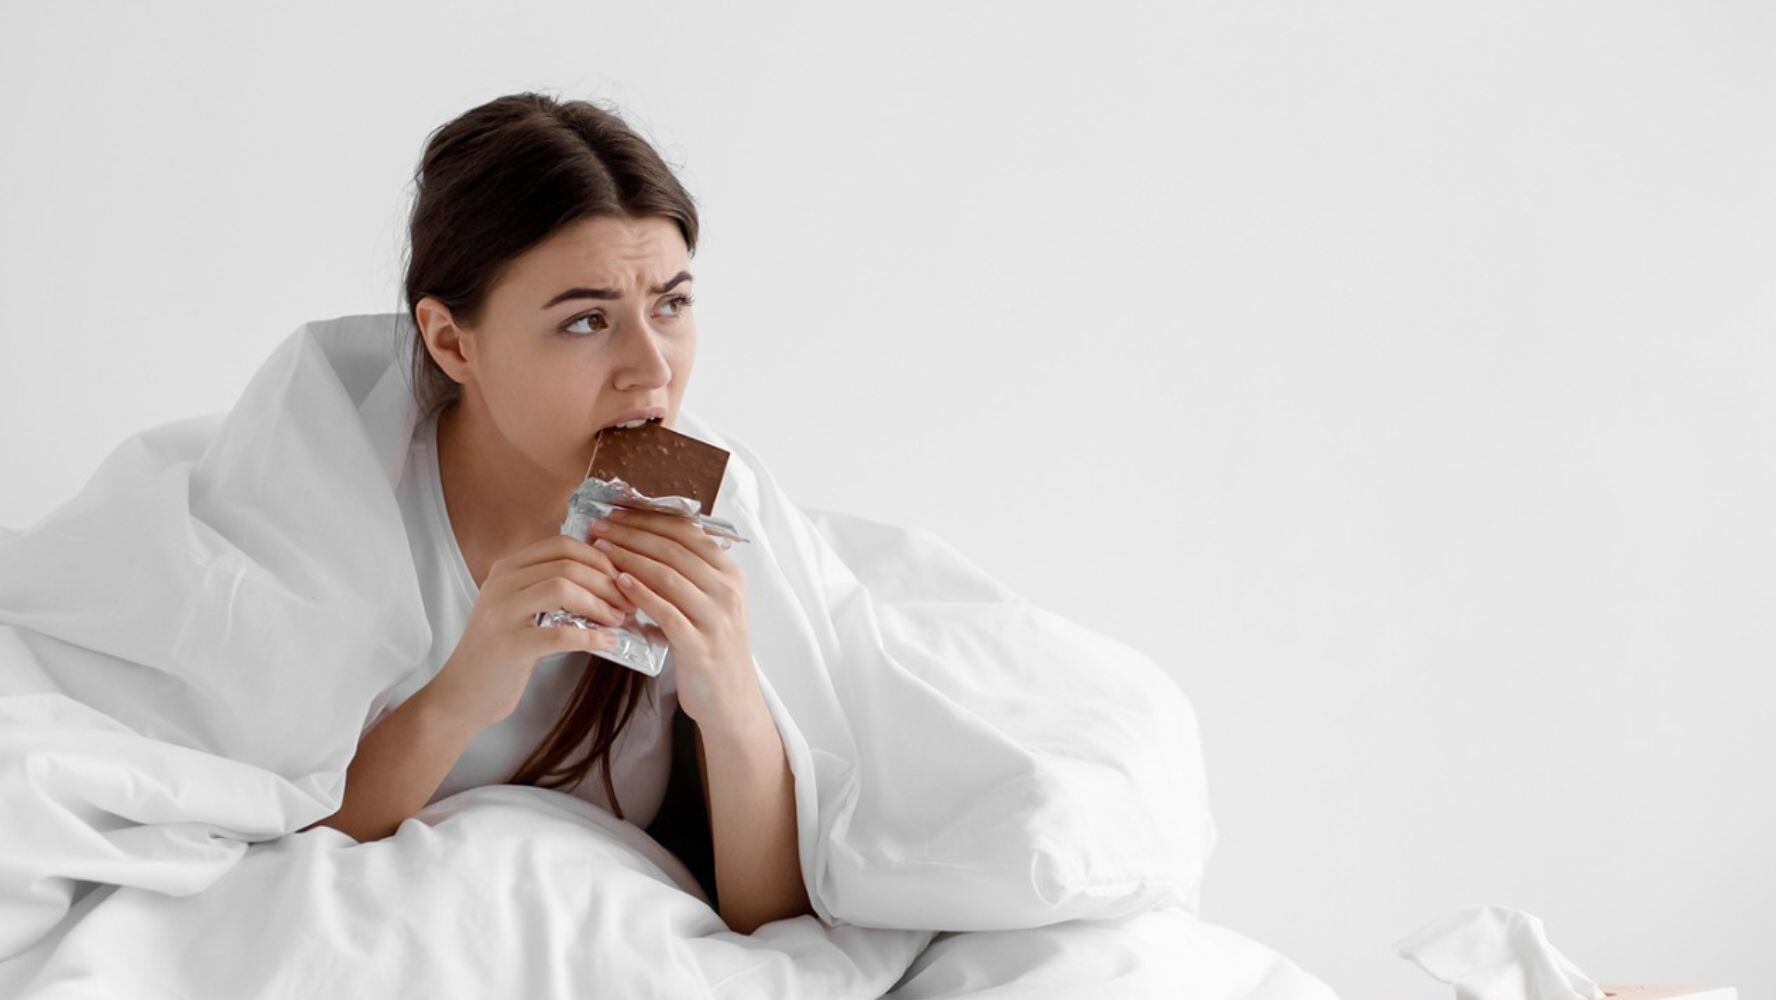 Consumir chocolate antes de dormir puede provocar efectos de insomnio. (Foto: Shuttertsock)